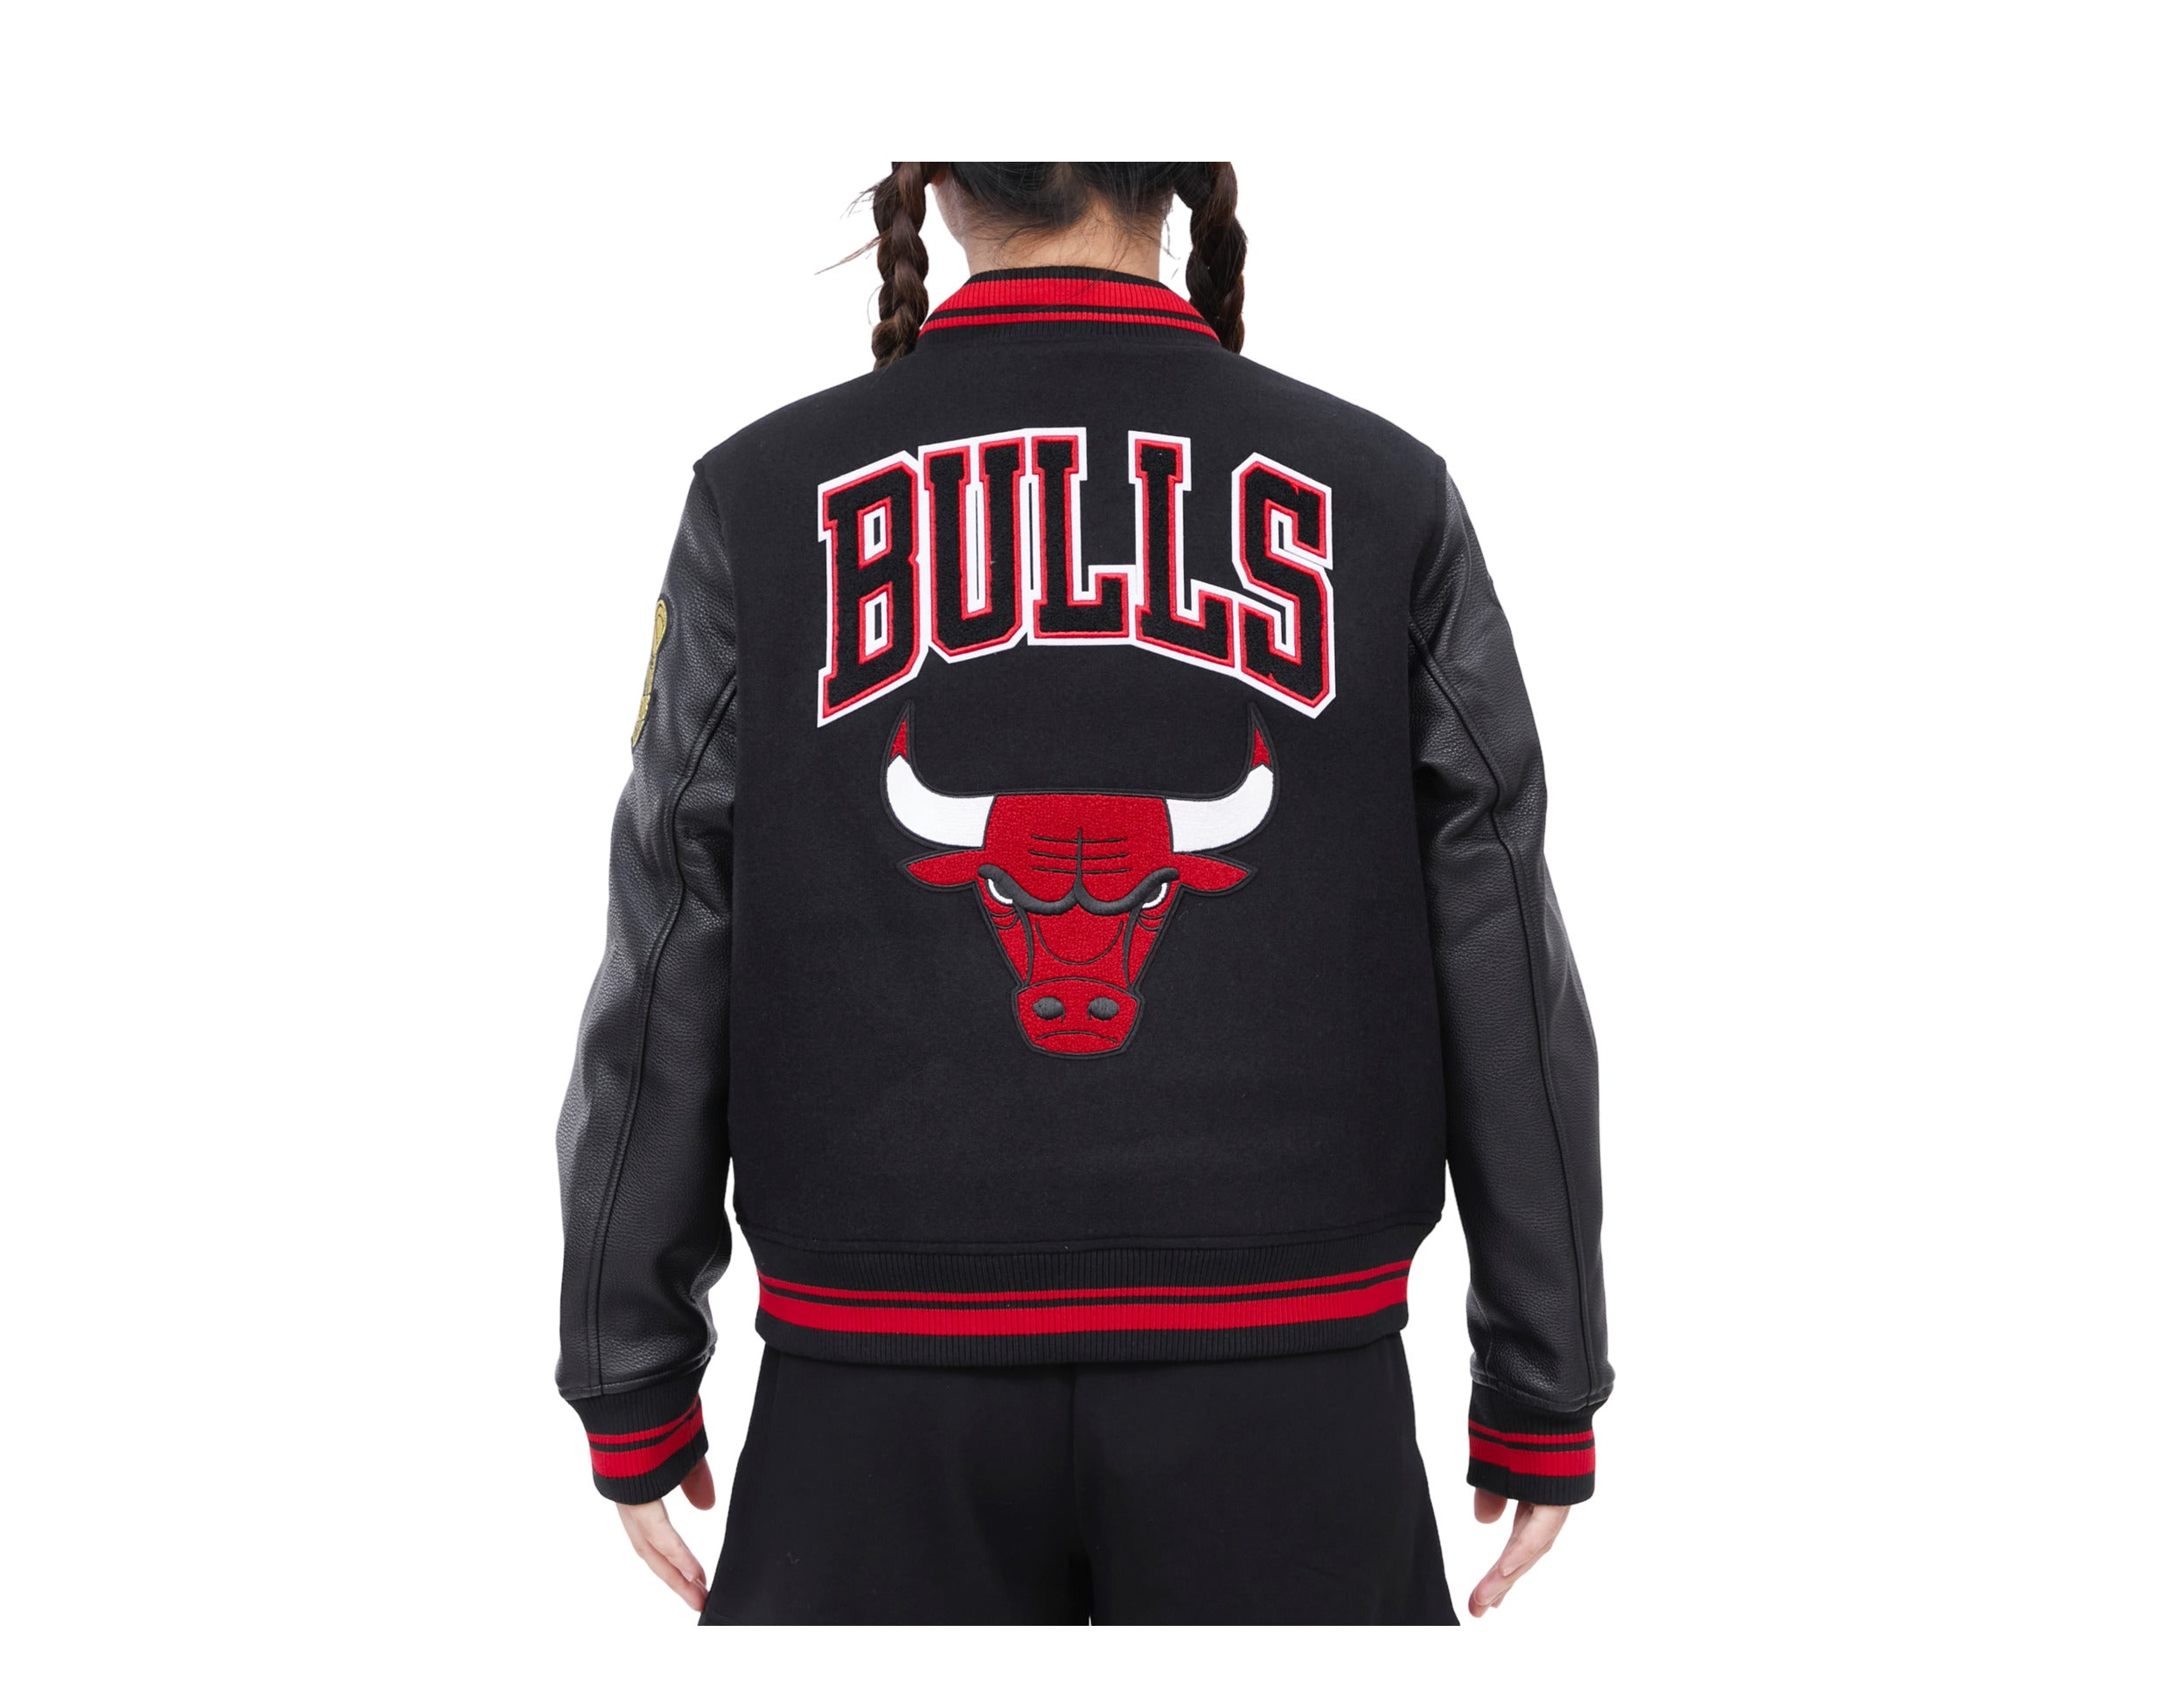 Wool & Leather Varsity Black and White Chicago Bulls Jacket - HJacket